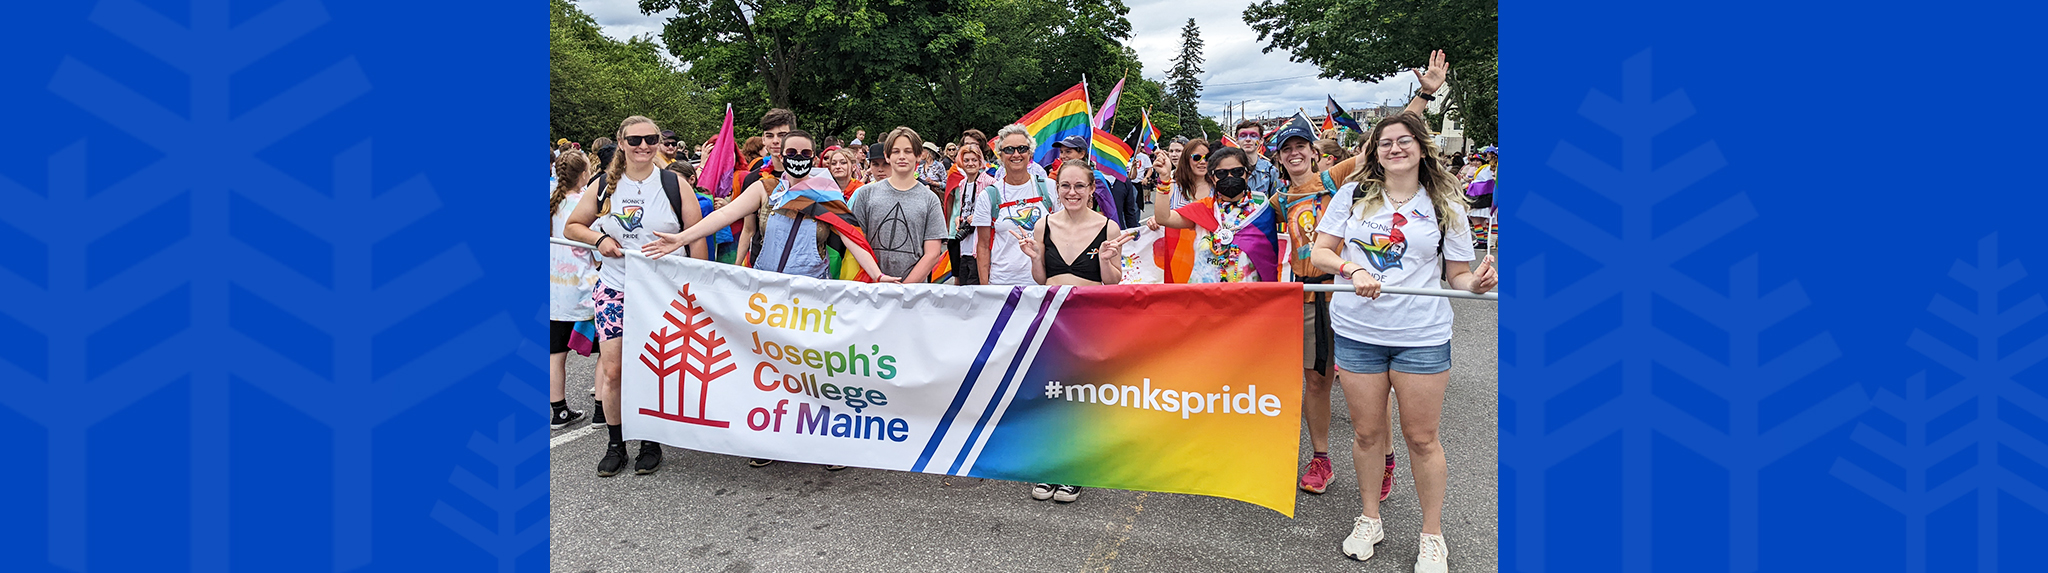 SJC participates in Pride Parade